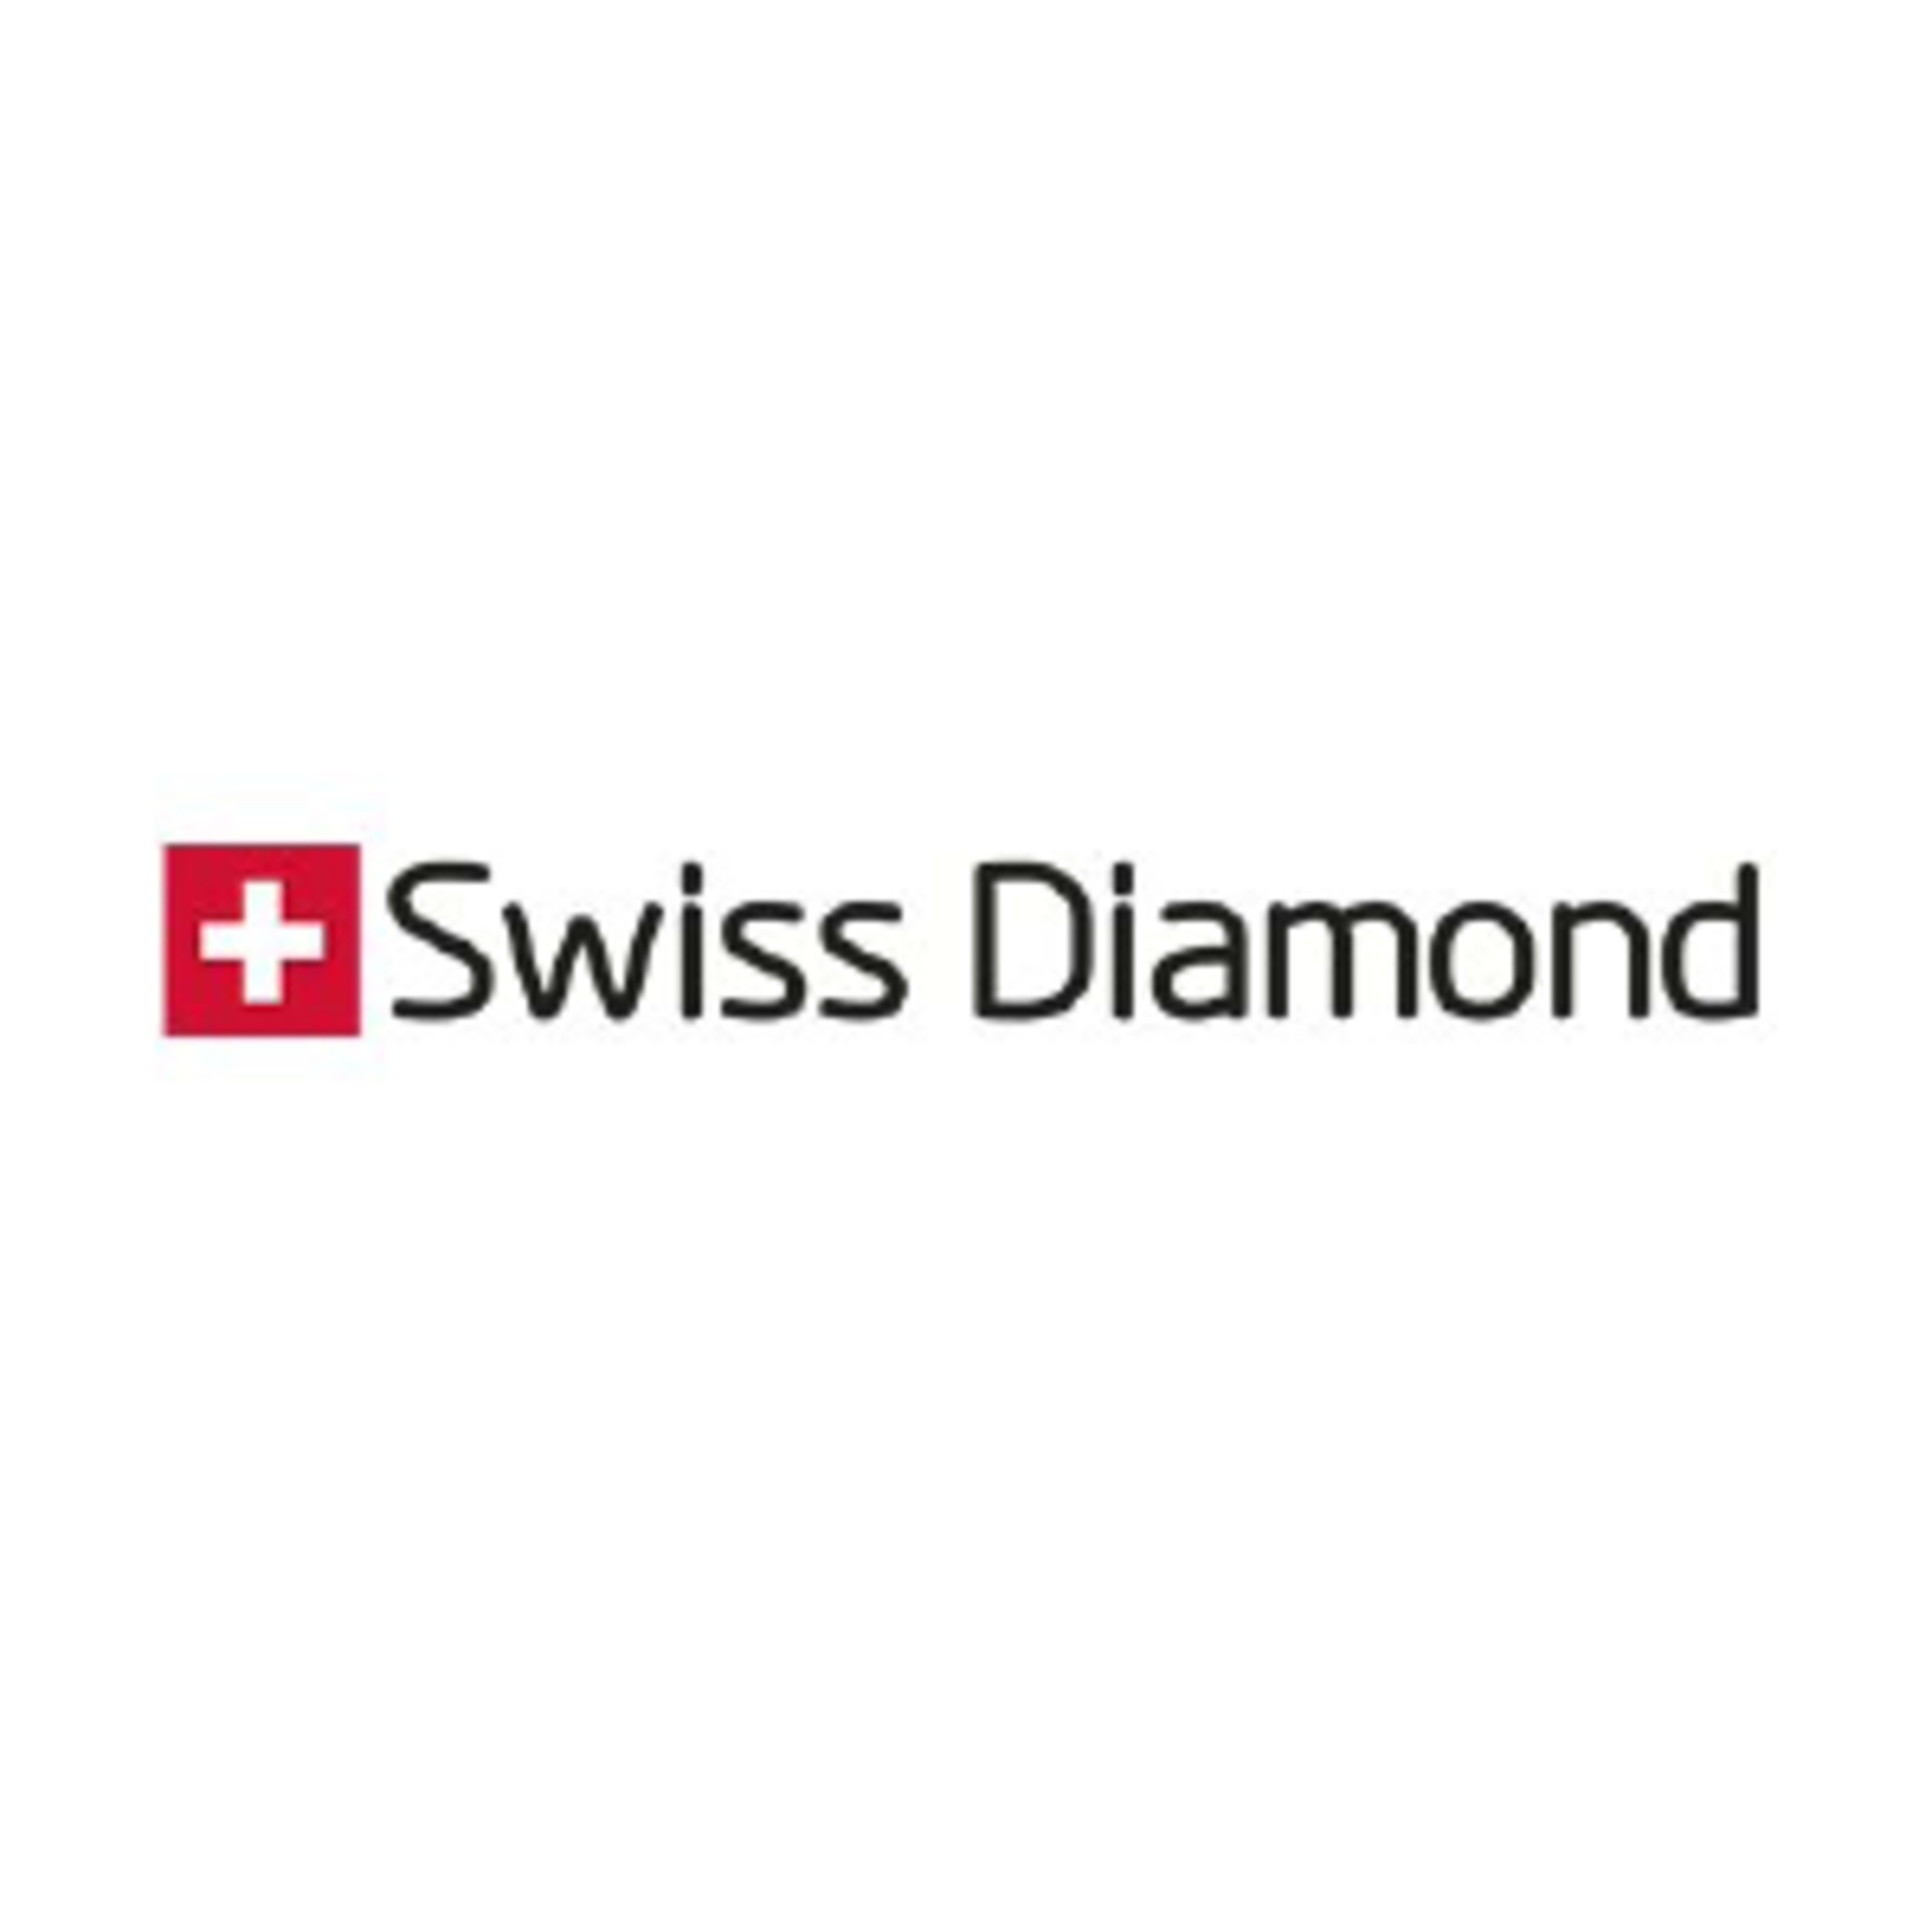 Swiss DiamondCode